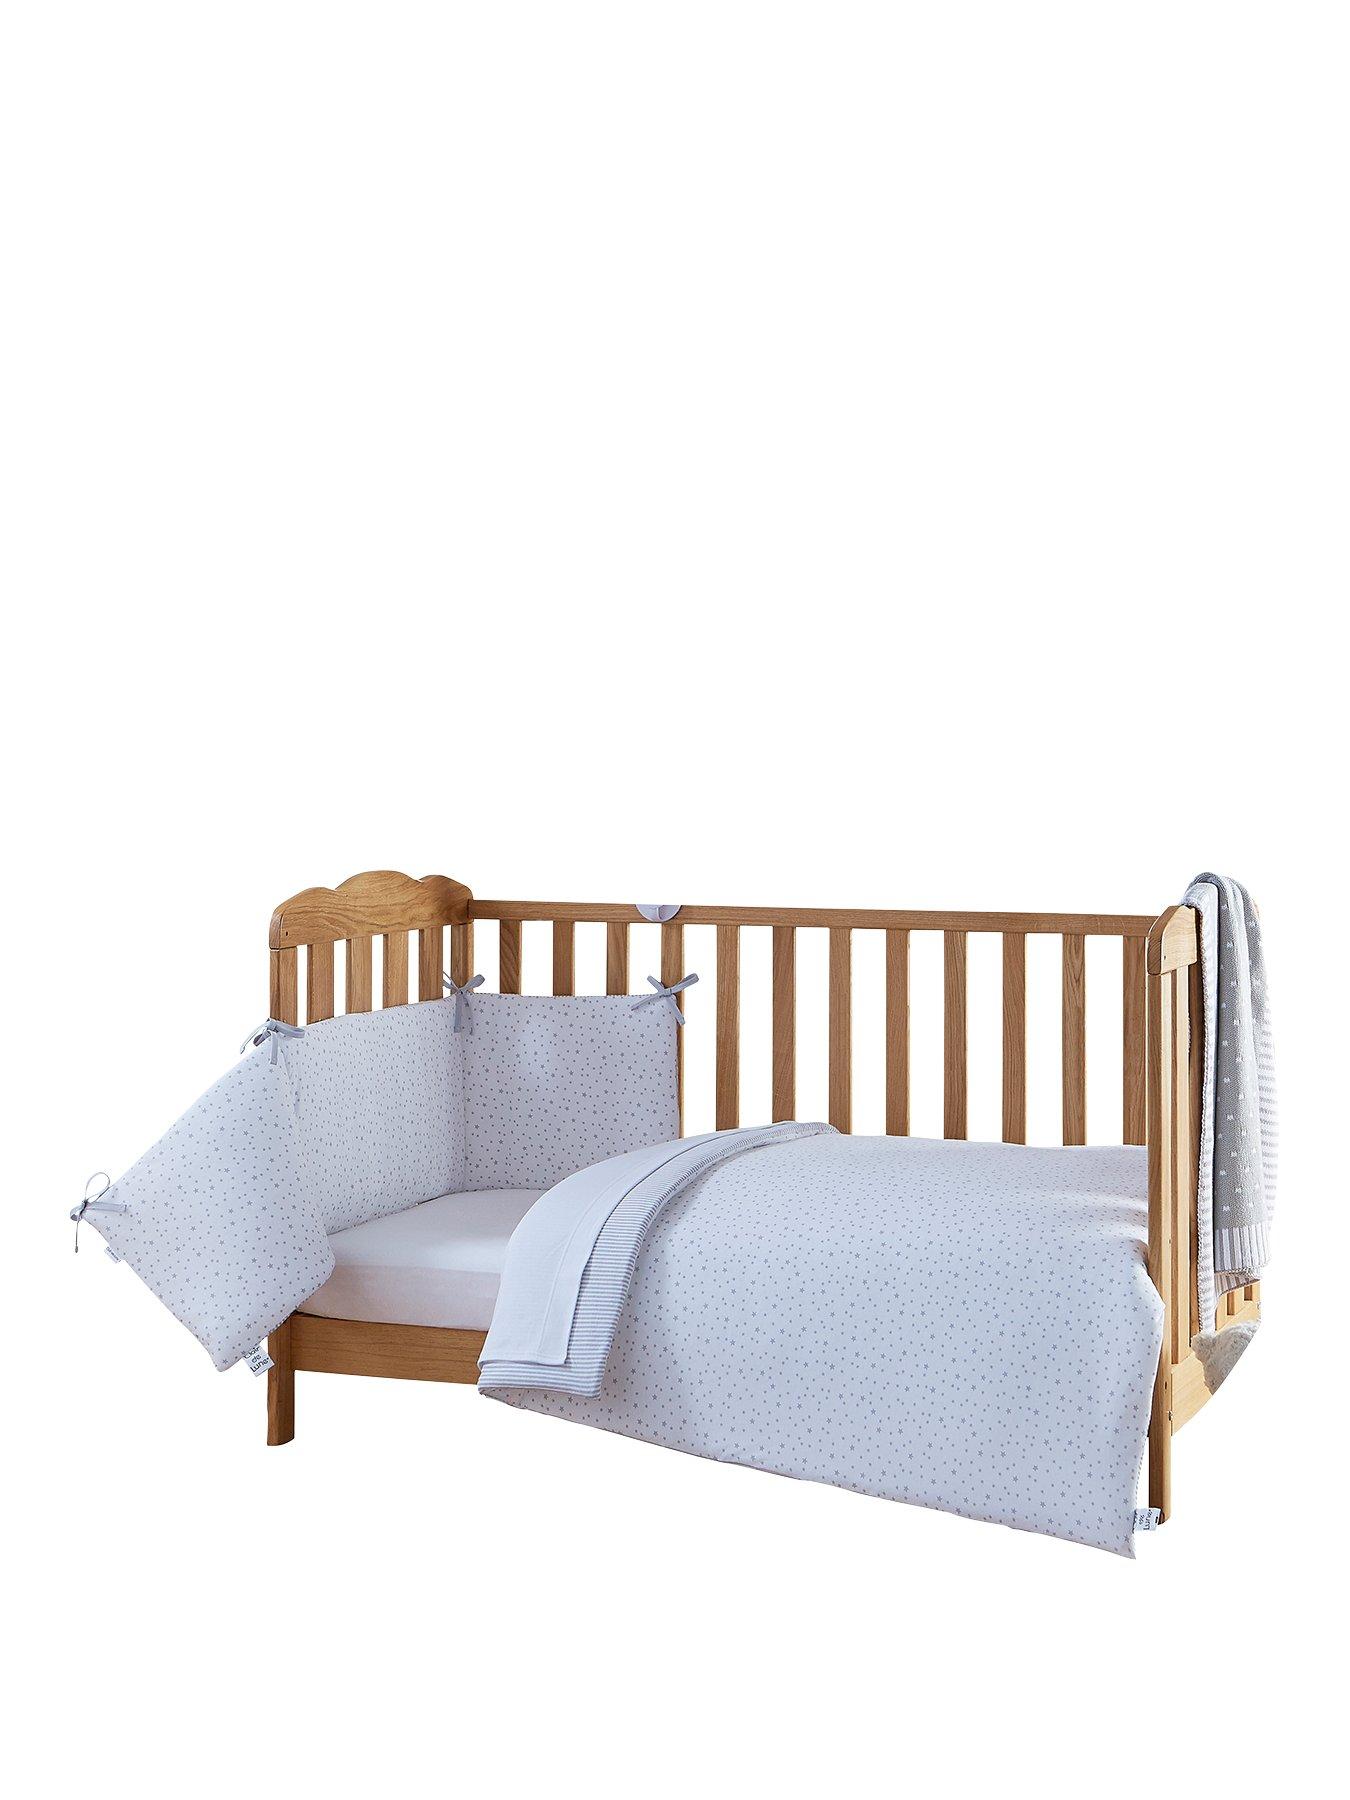 cotbed bedding set